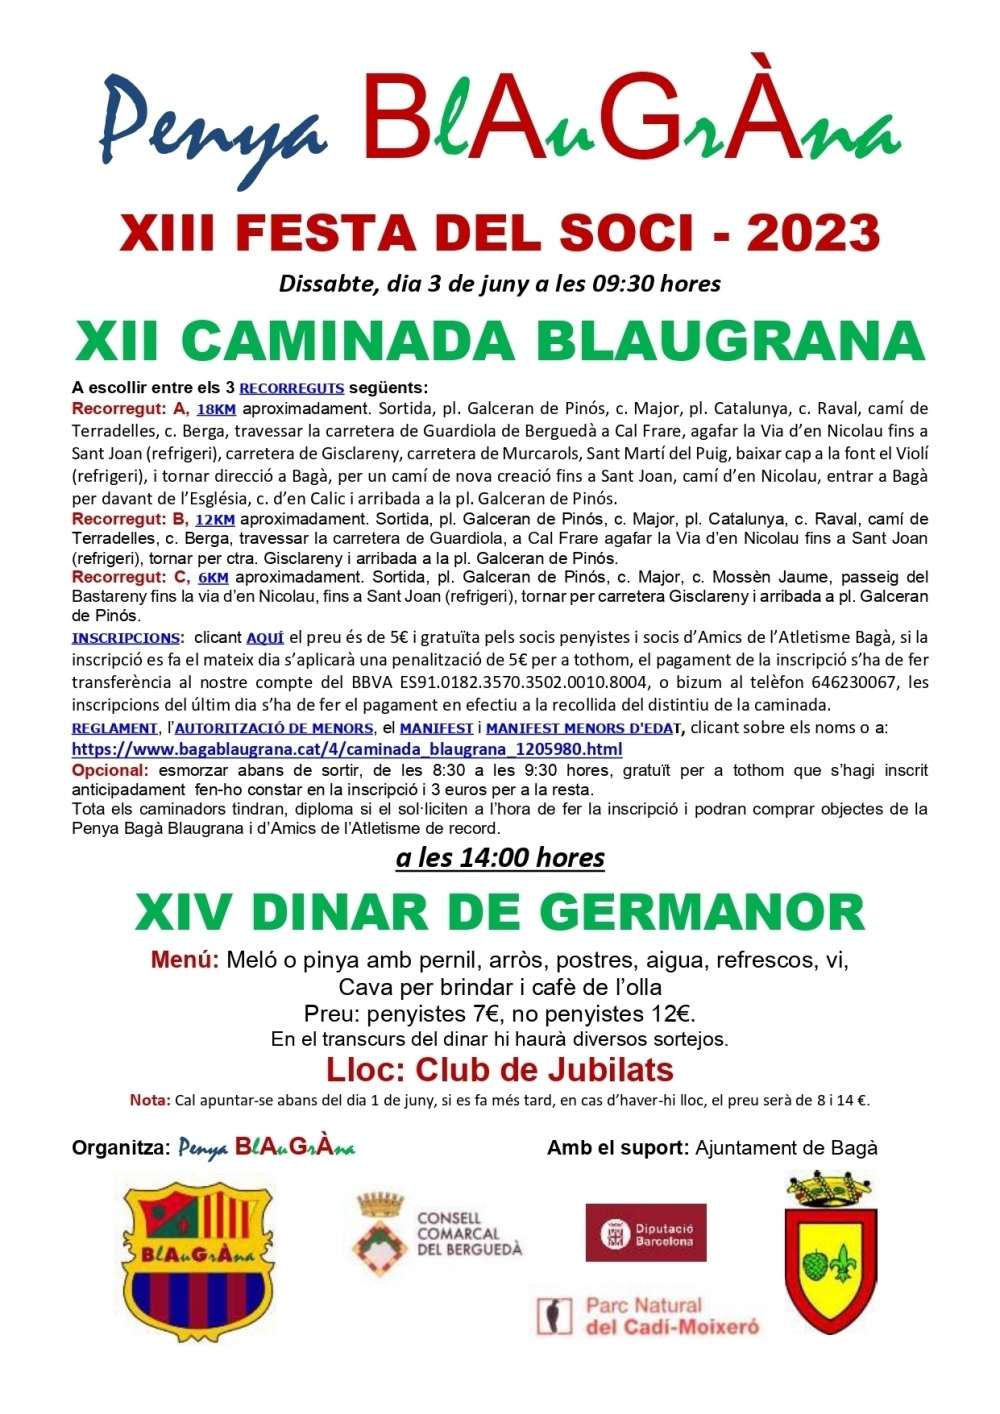 2023-FESTA DEL SOCI i CAMINADA BLAUGRANA - Bagà BlAuGrÀna